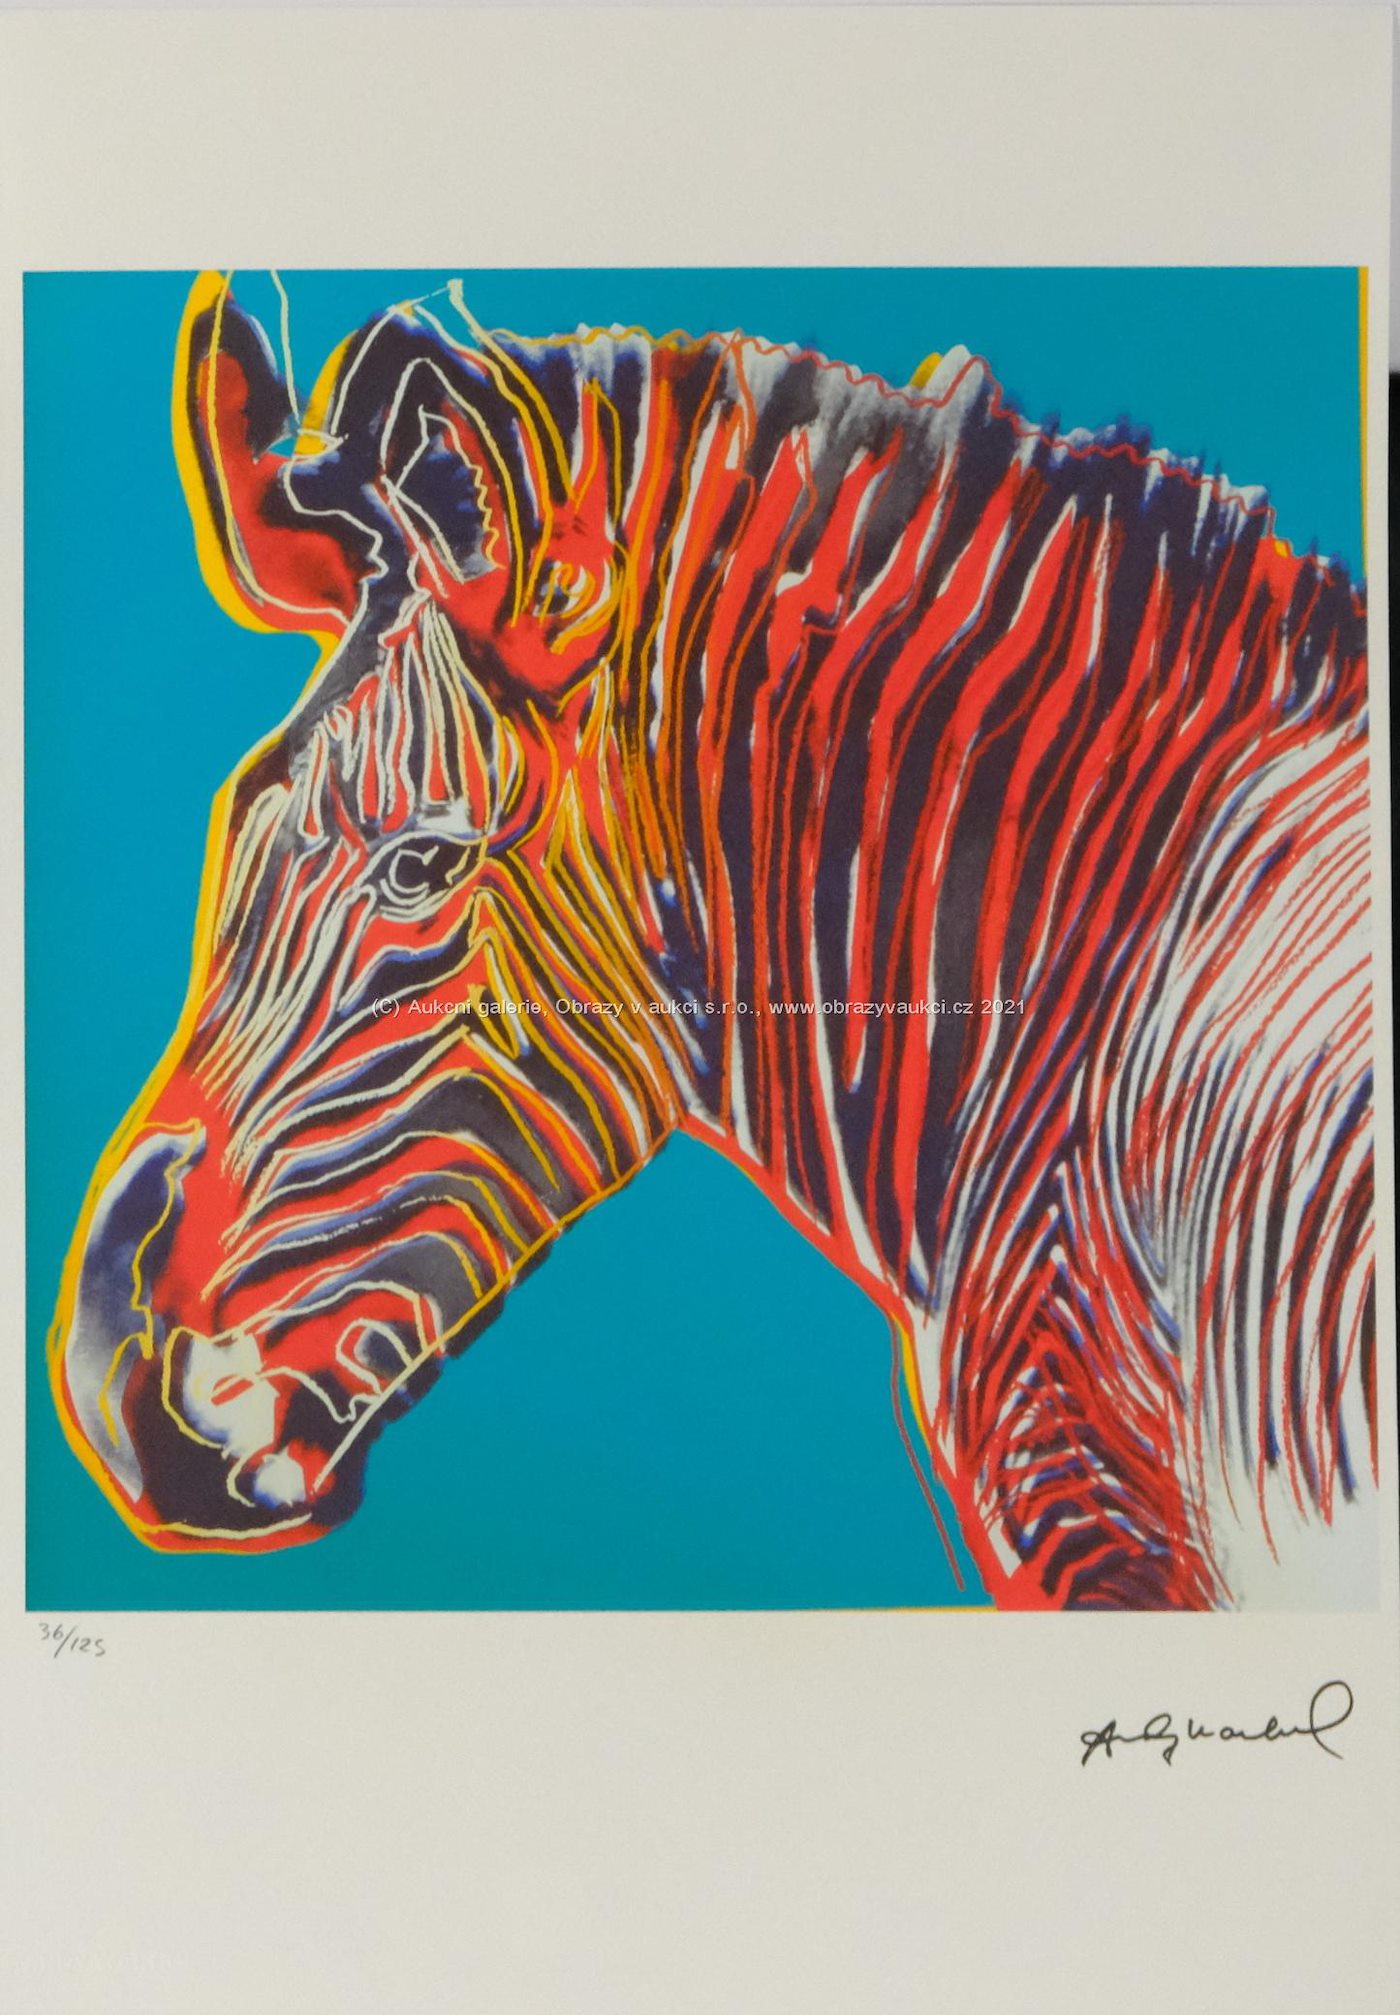 Andy Warhol - Zebra